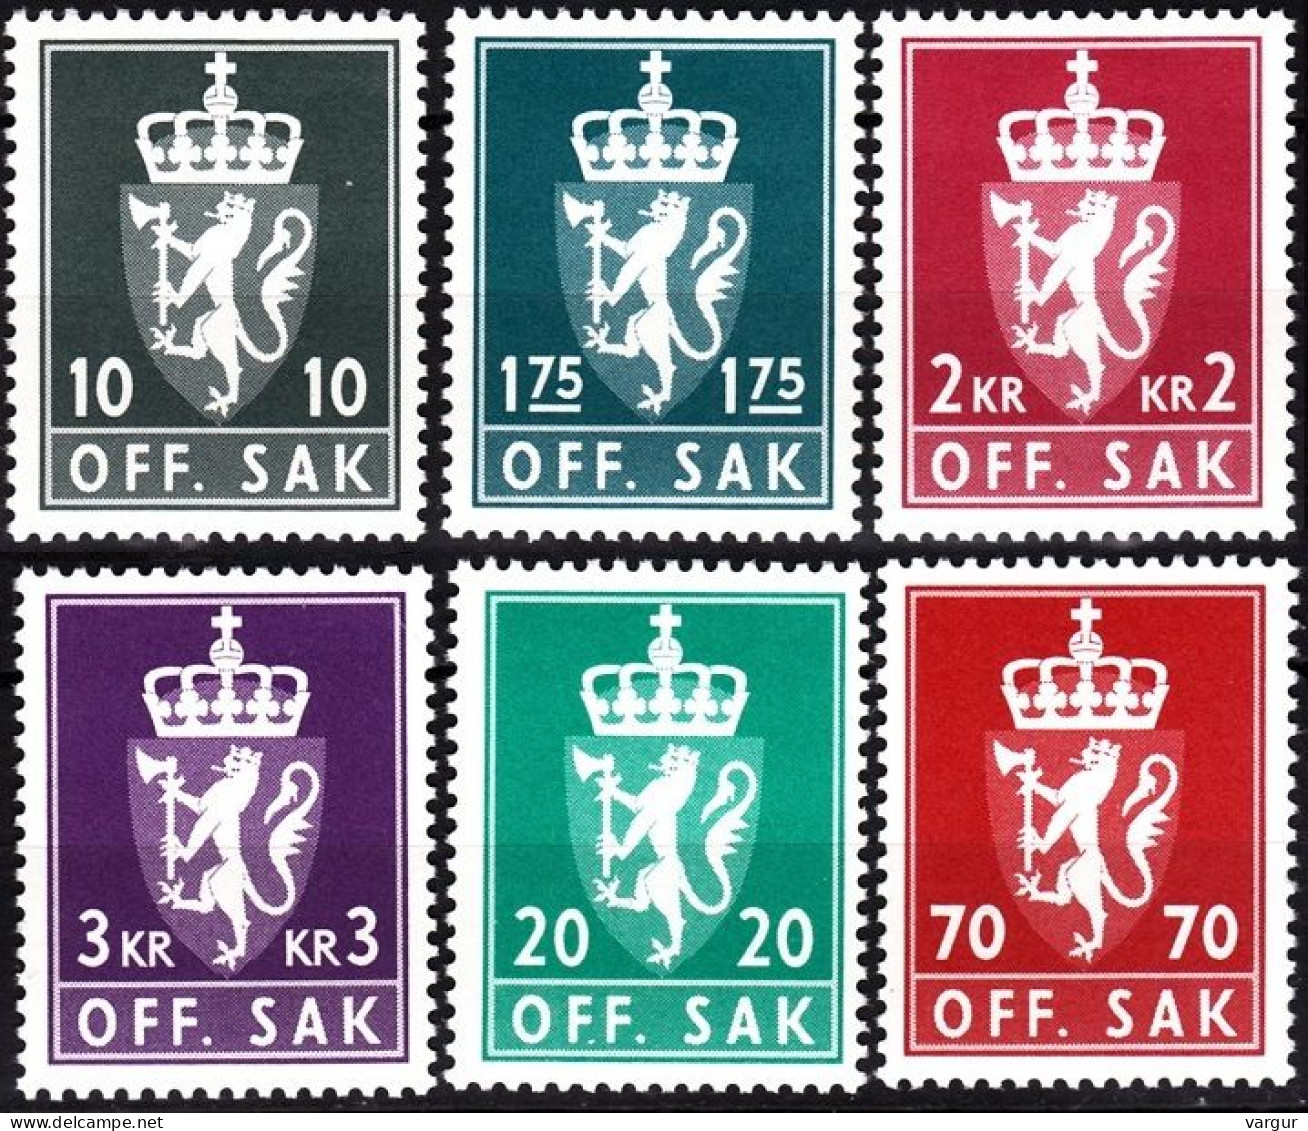 NORWAY 1981-82 Official. Heraldry. 6v, MNH - Dienstzegels